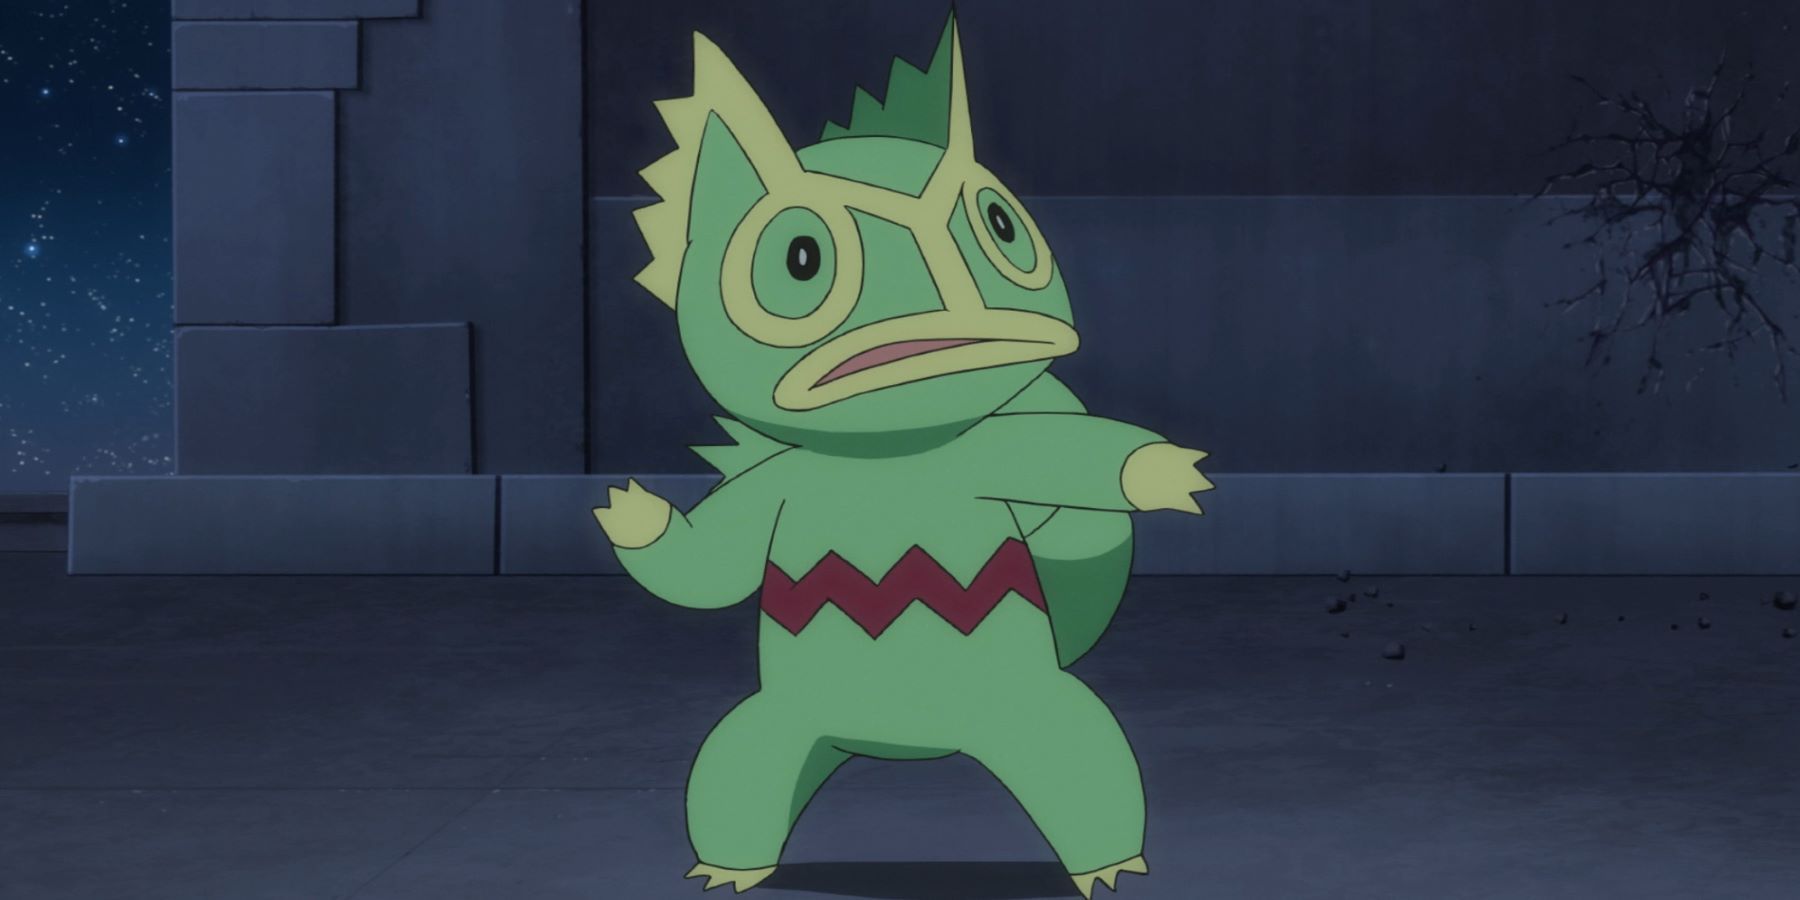 Yabashi's Kecleon from the Pokemon anime looking nervous